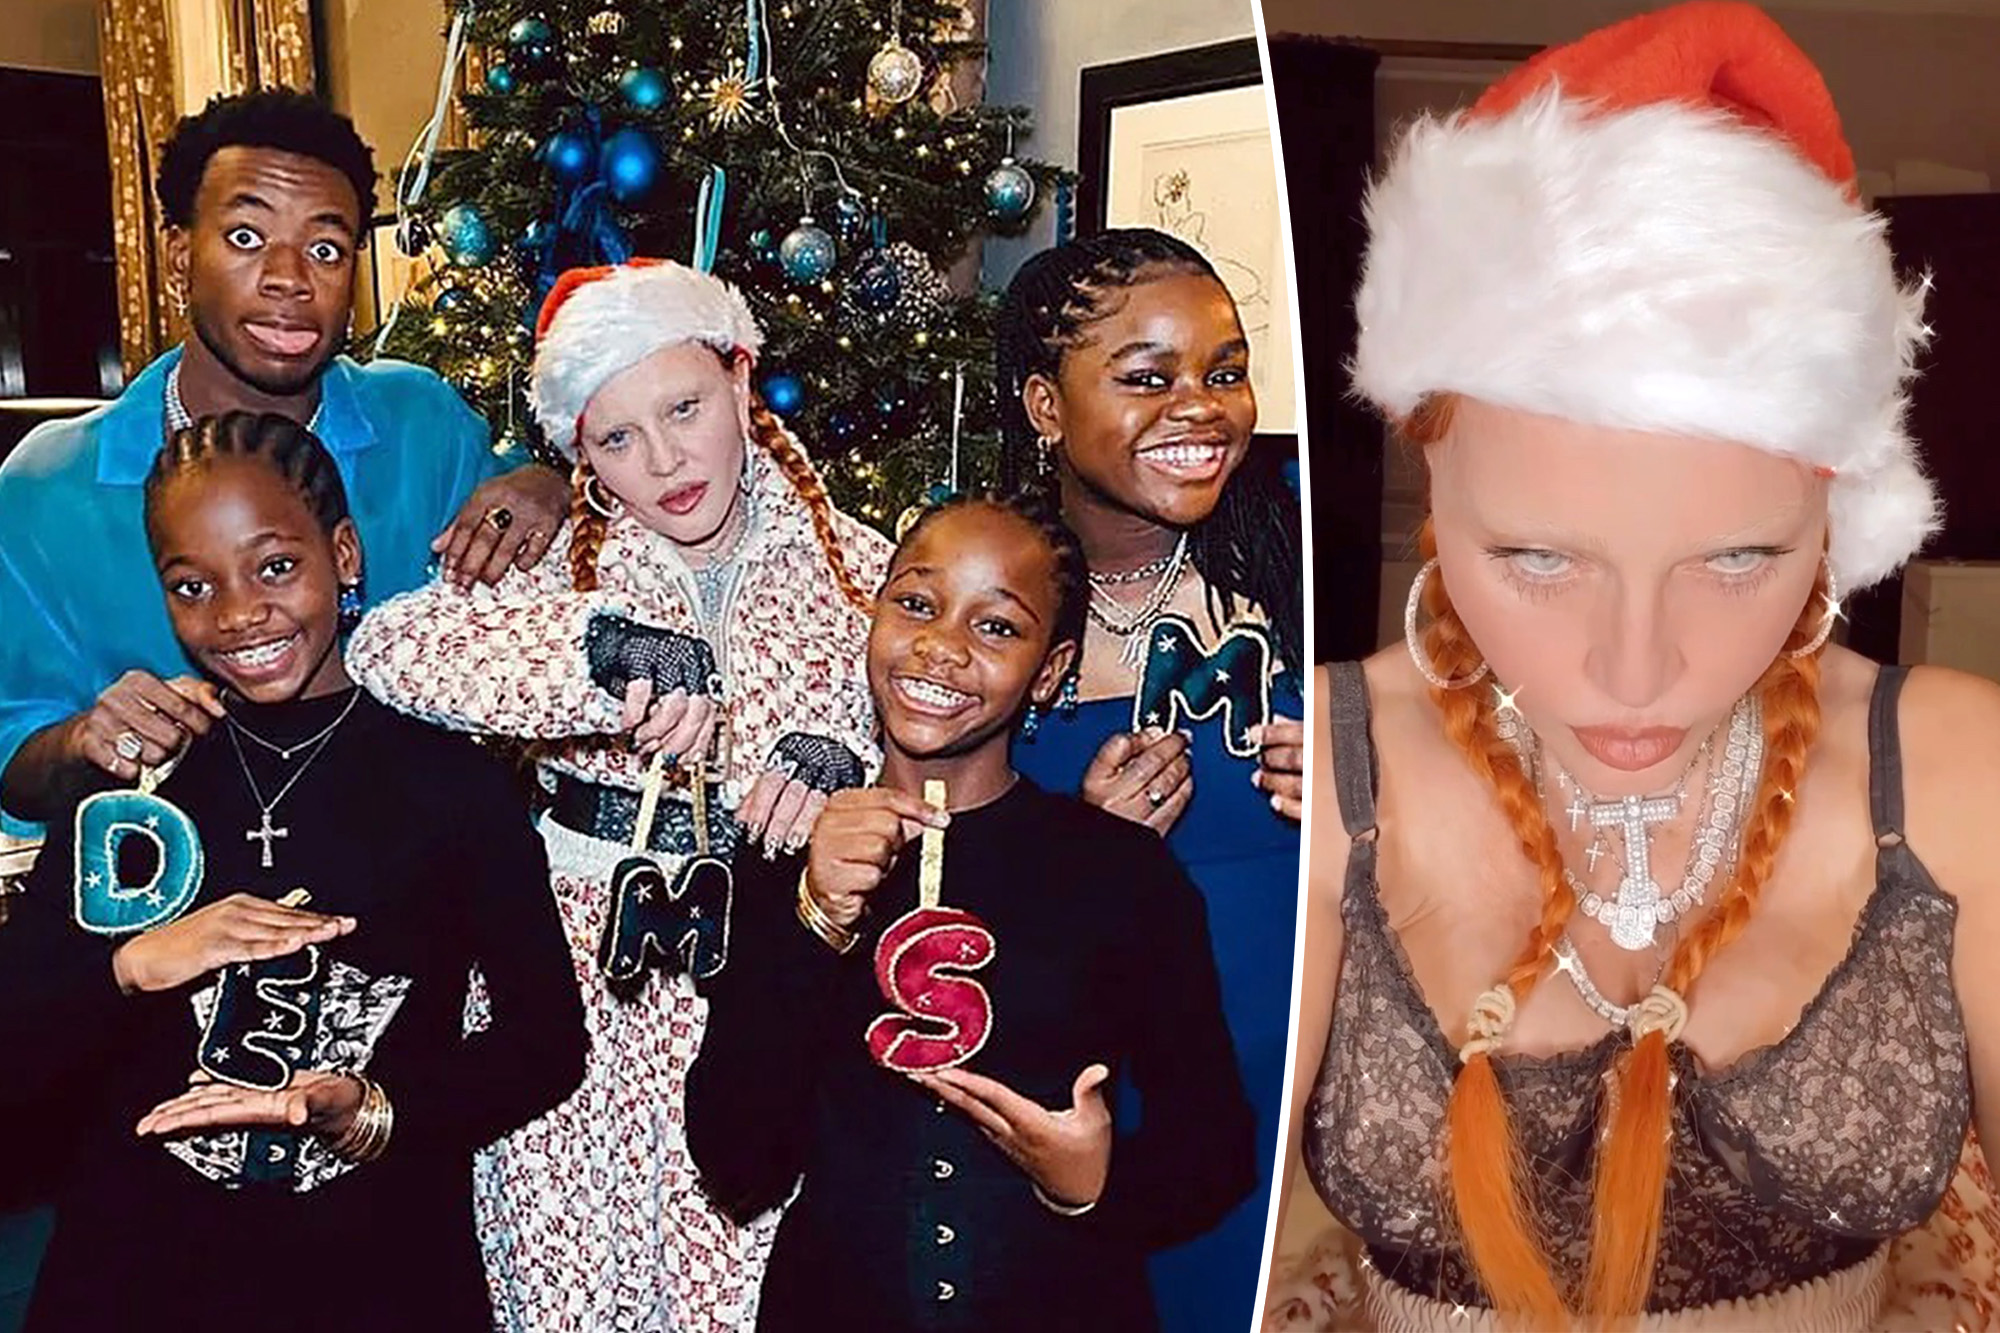 Madonna escandaliza al celebrar con lencería las Navidades junto a sus hijos